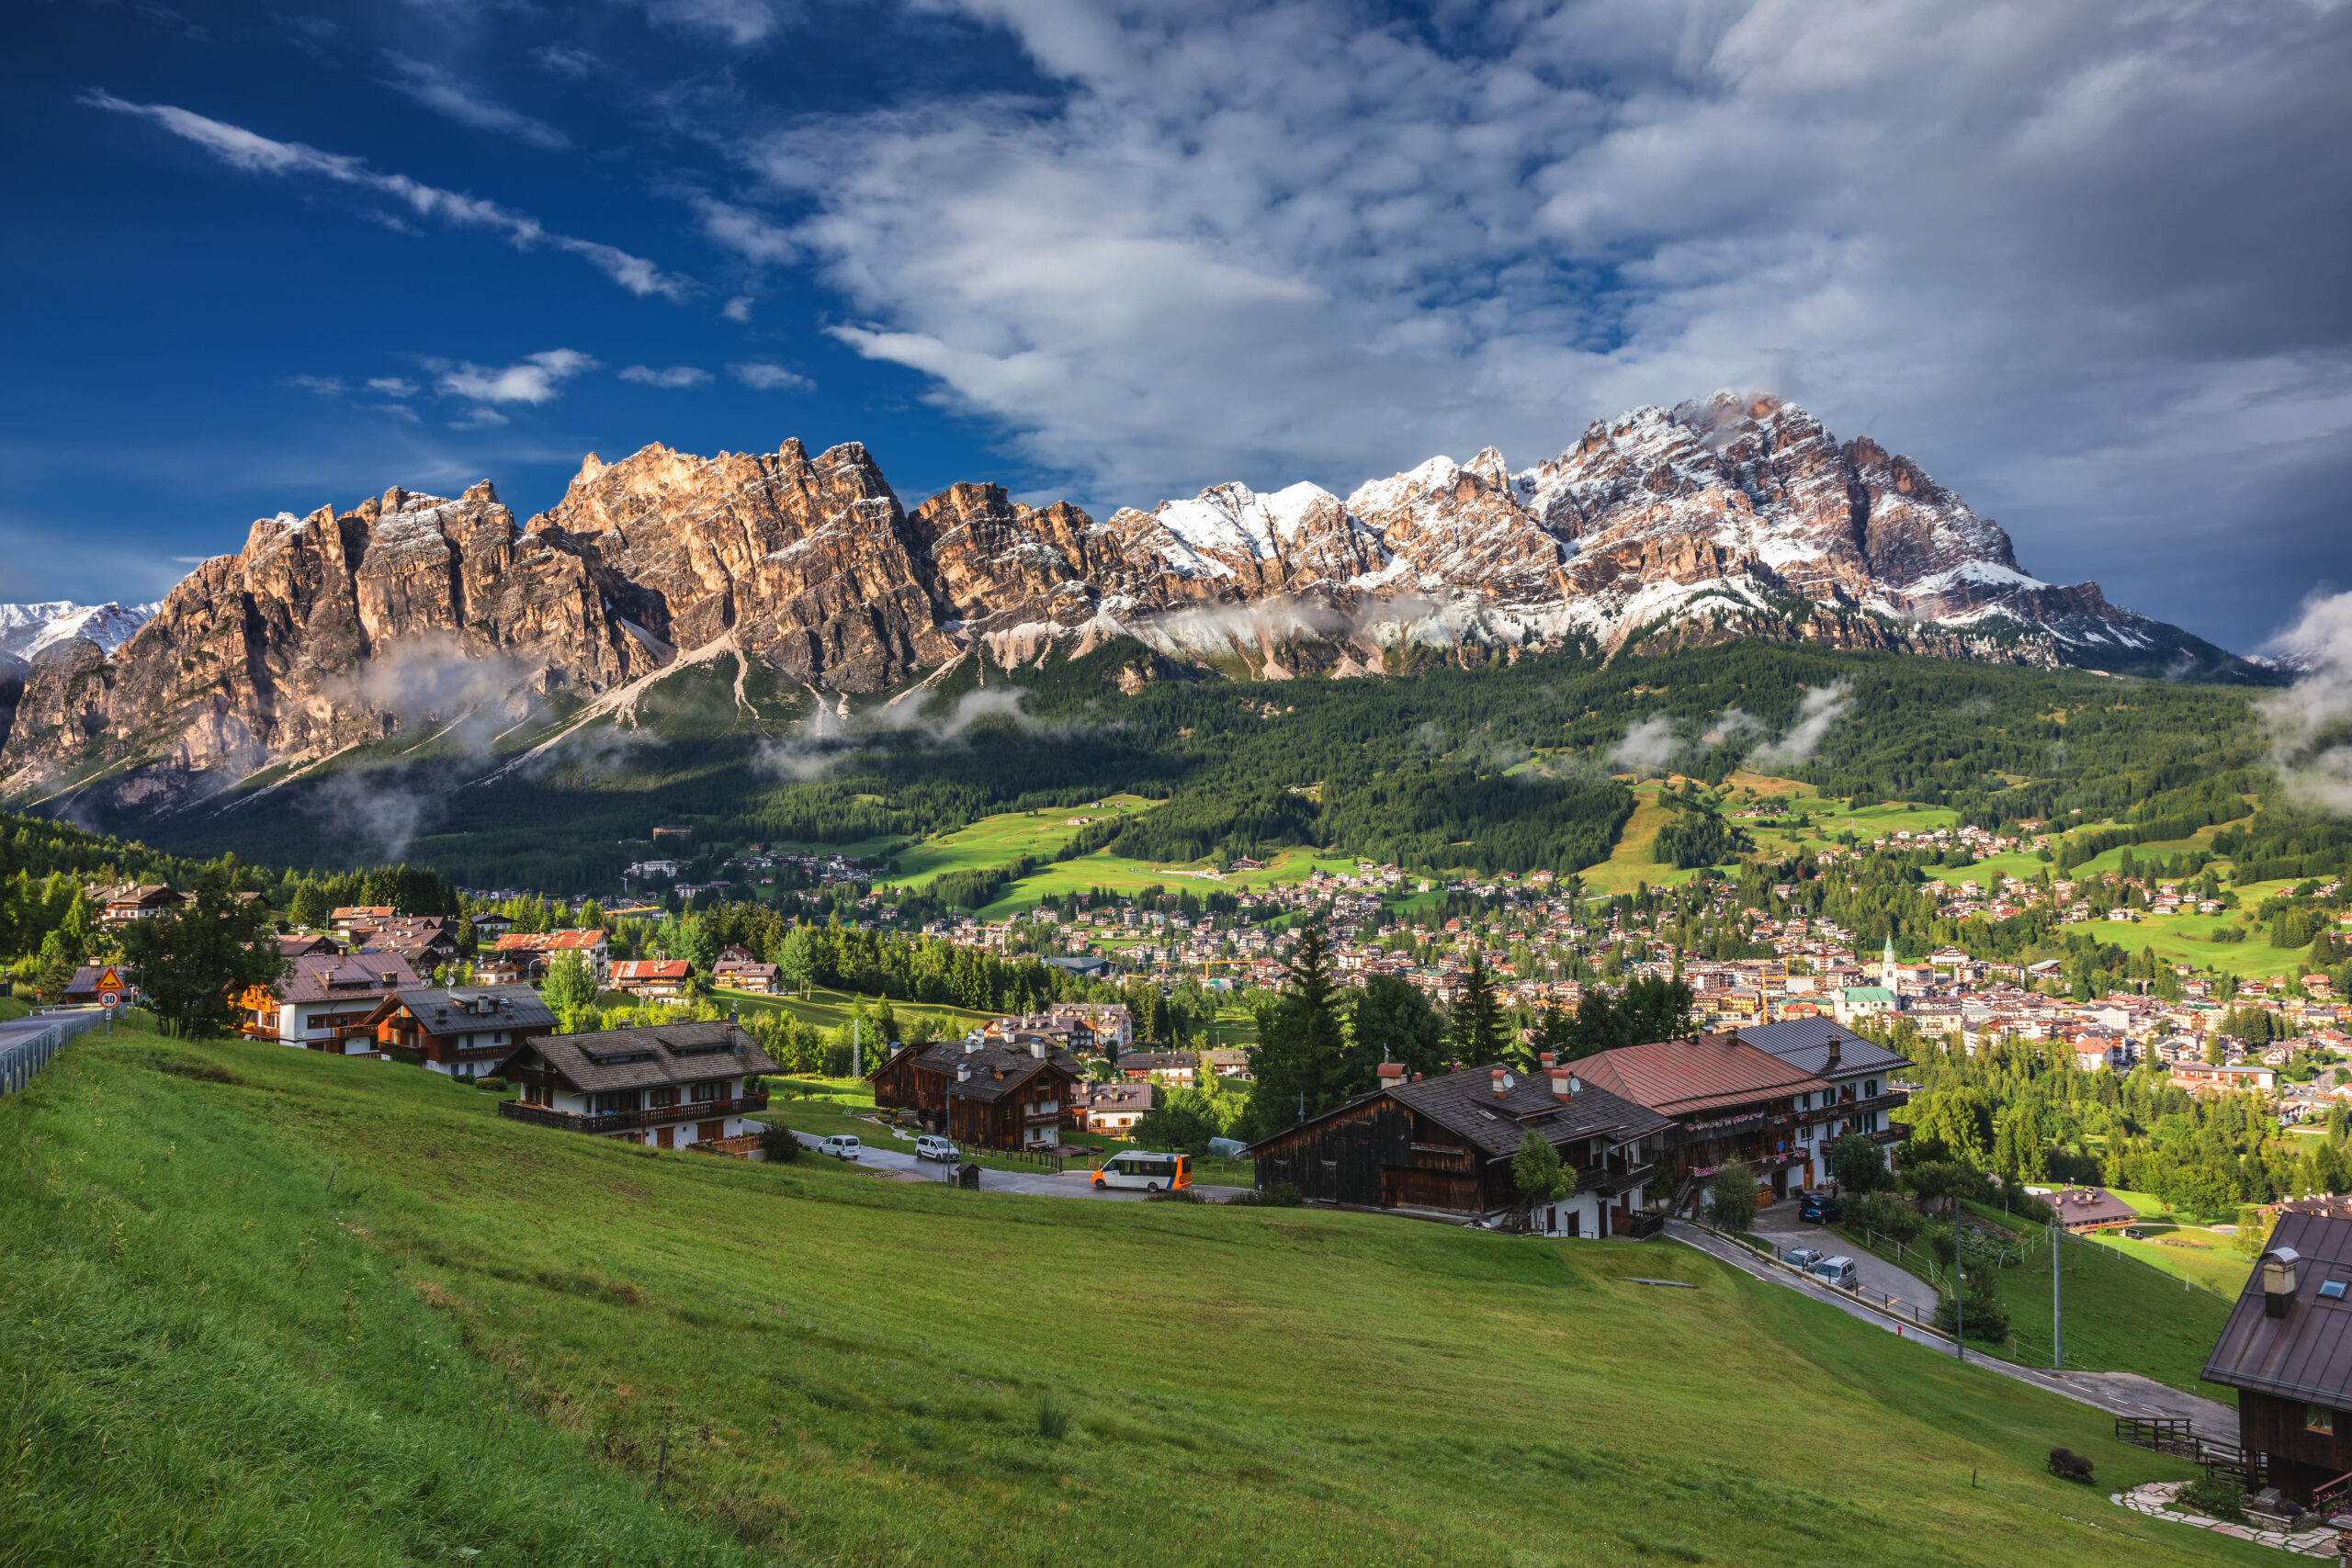 Dolomites – unique in the World